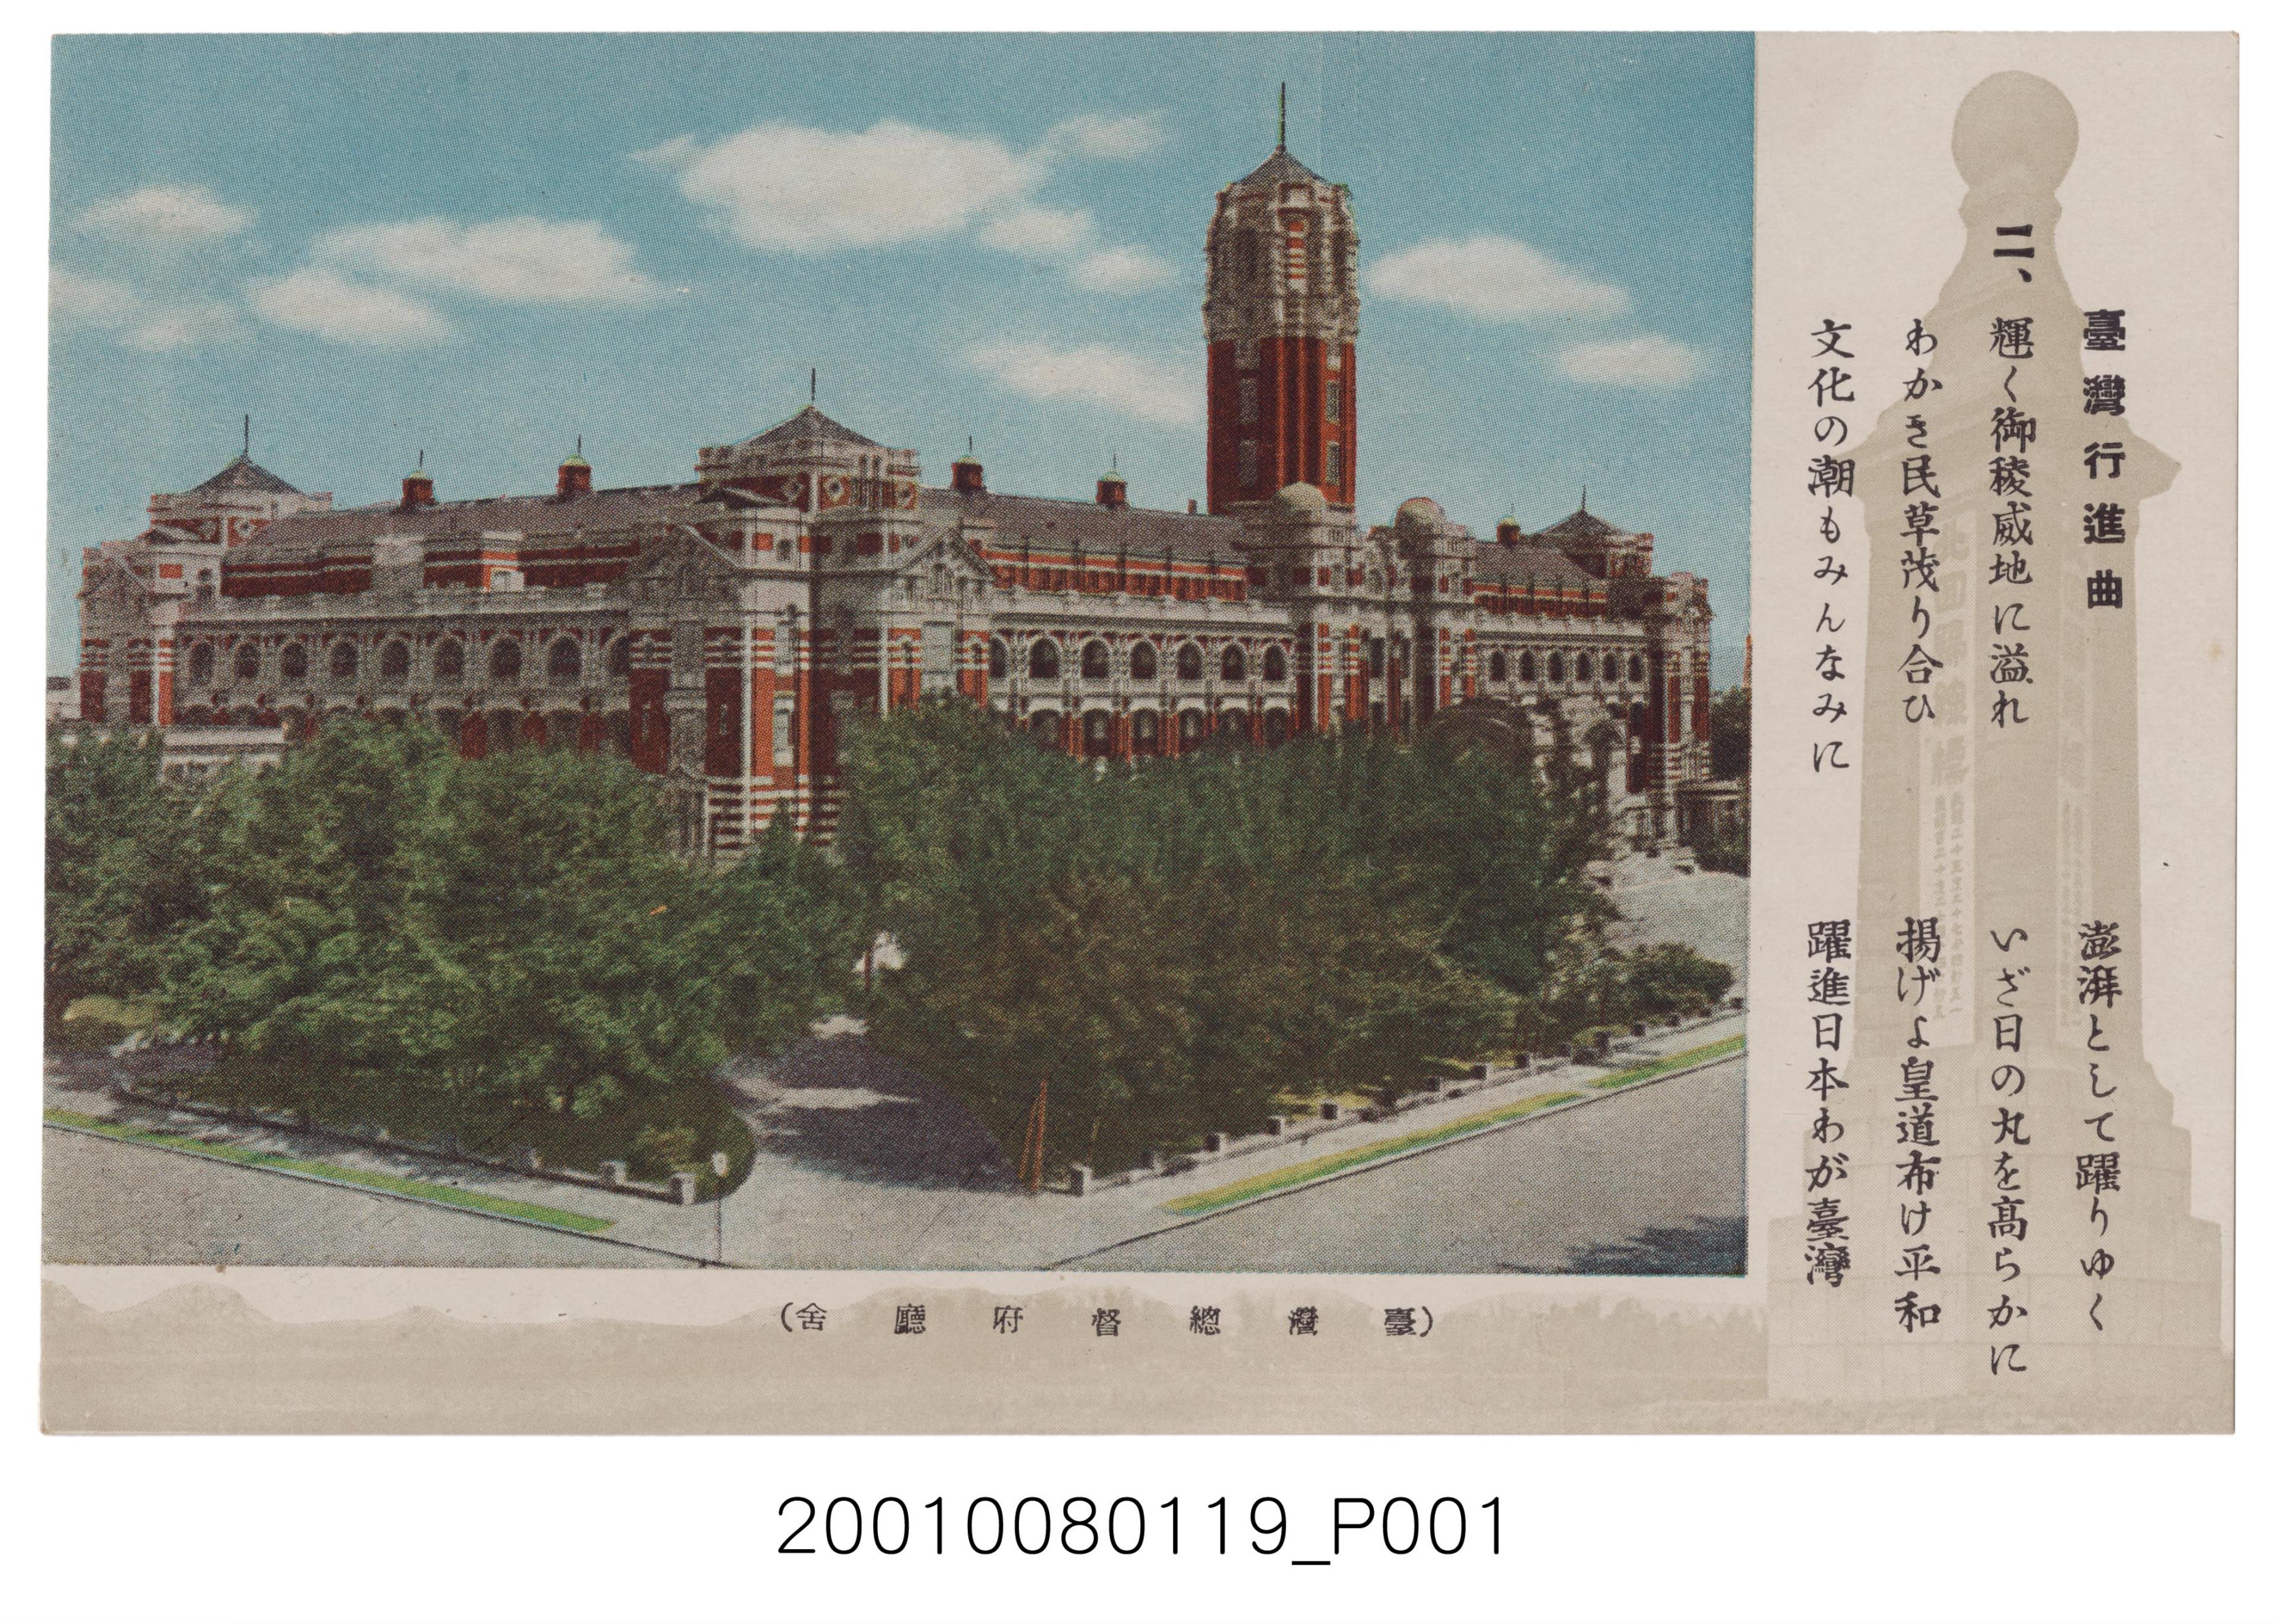 共同印刷株式會社印刷臺灣總督府官舍 (共2張)